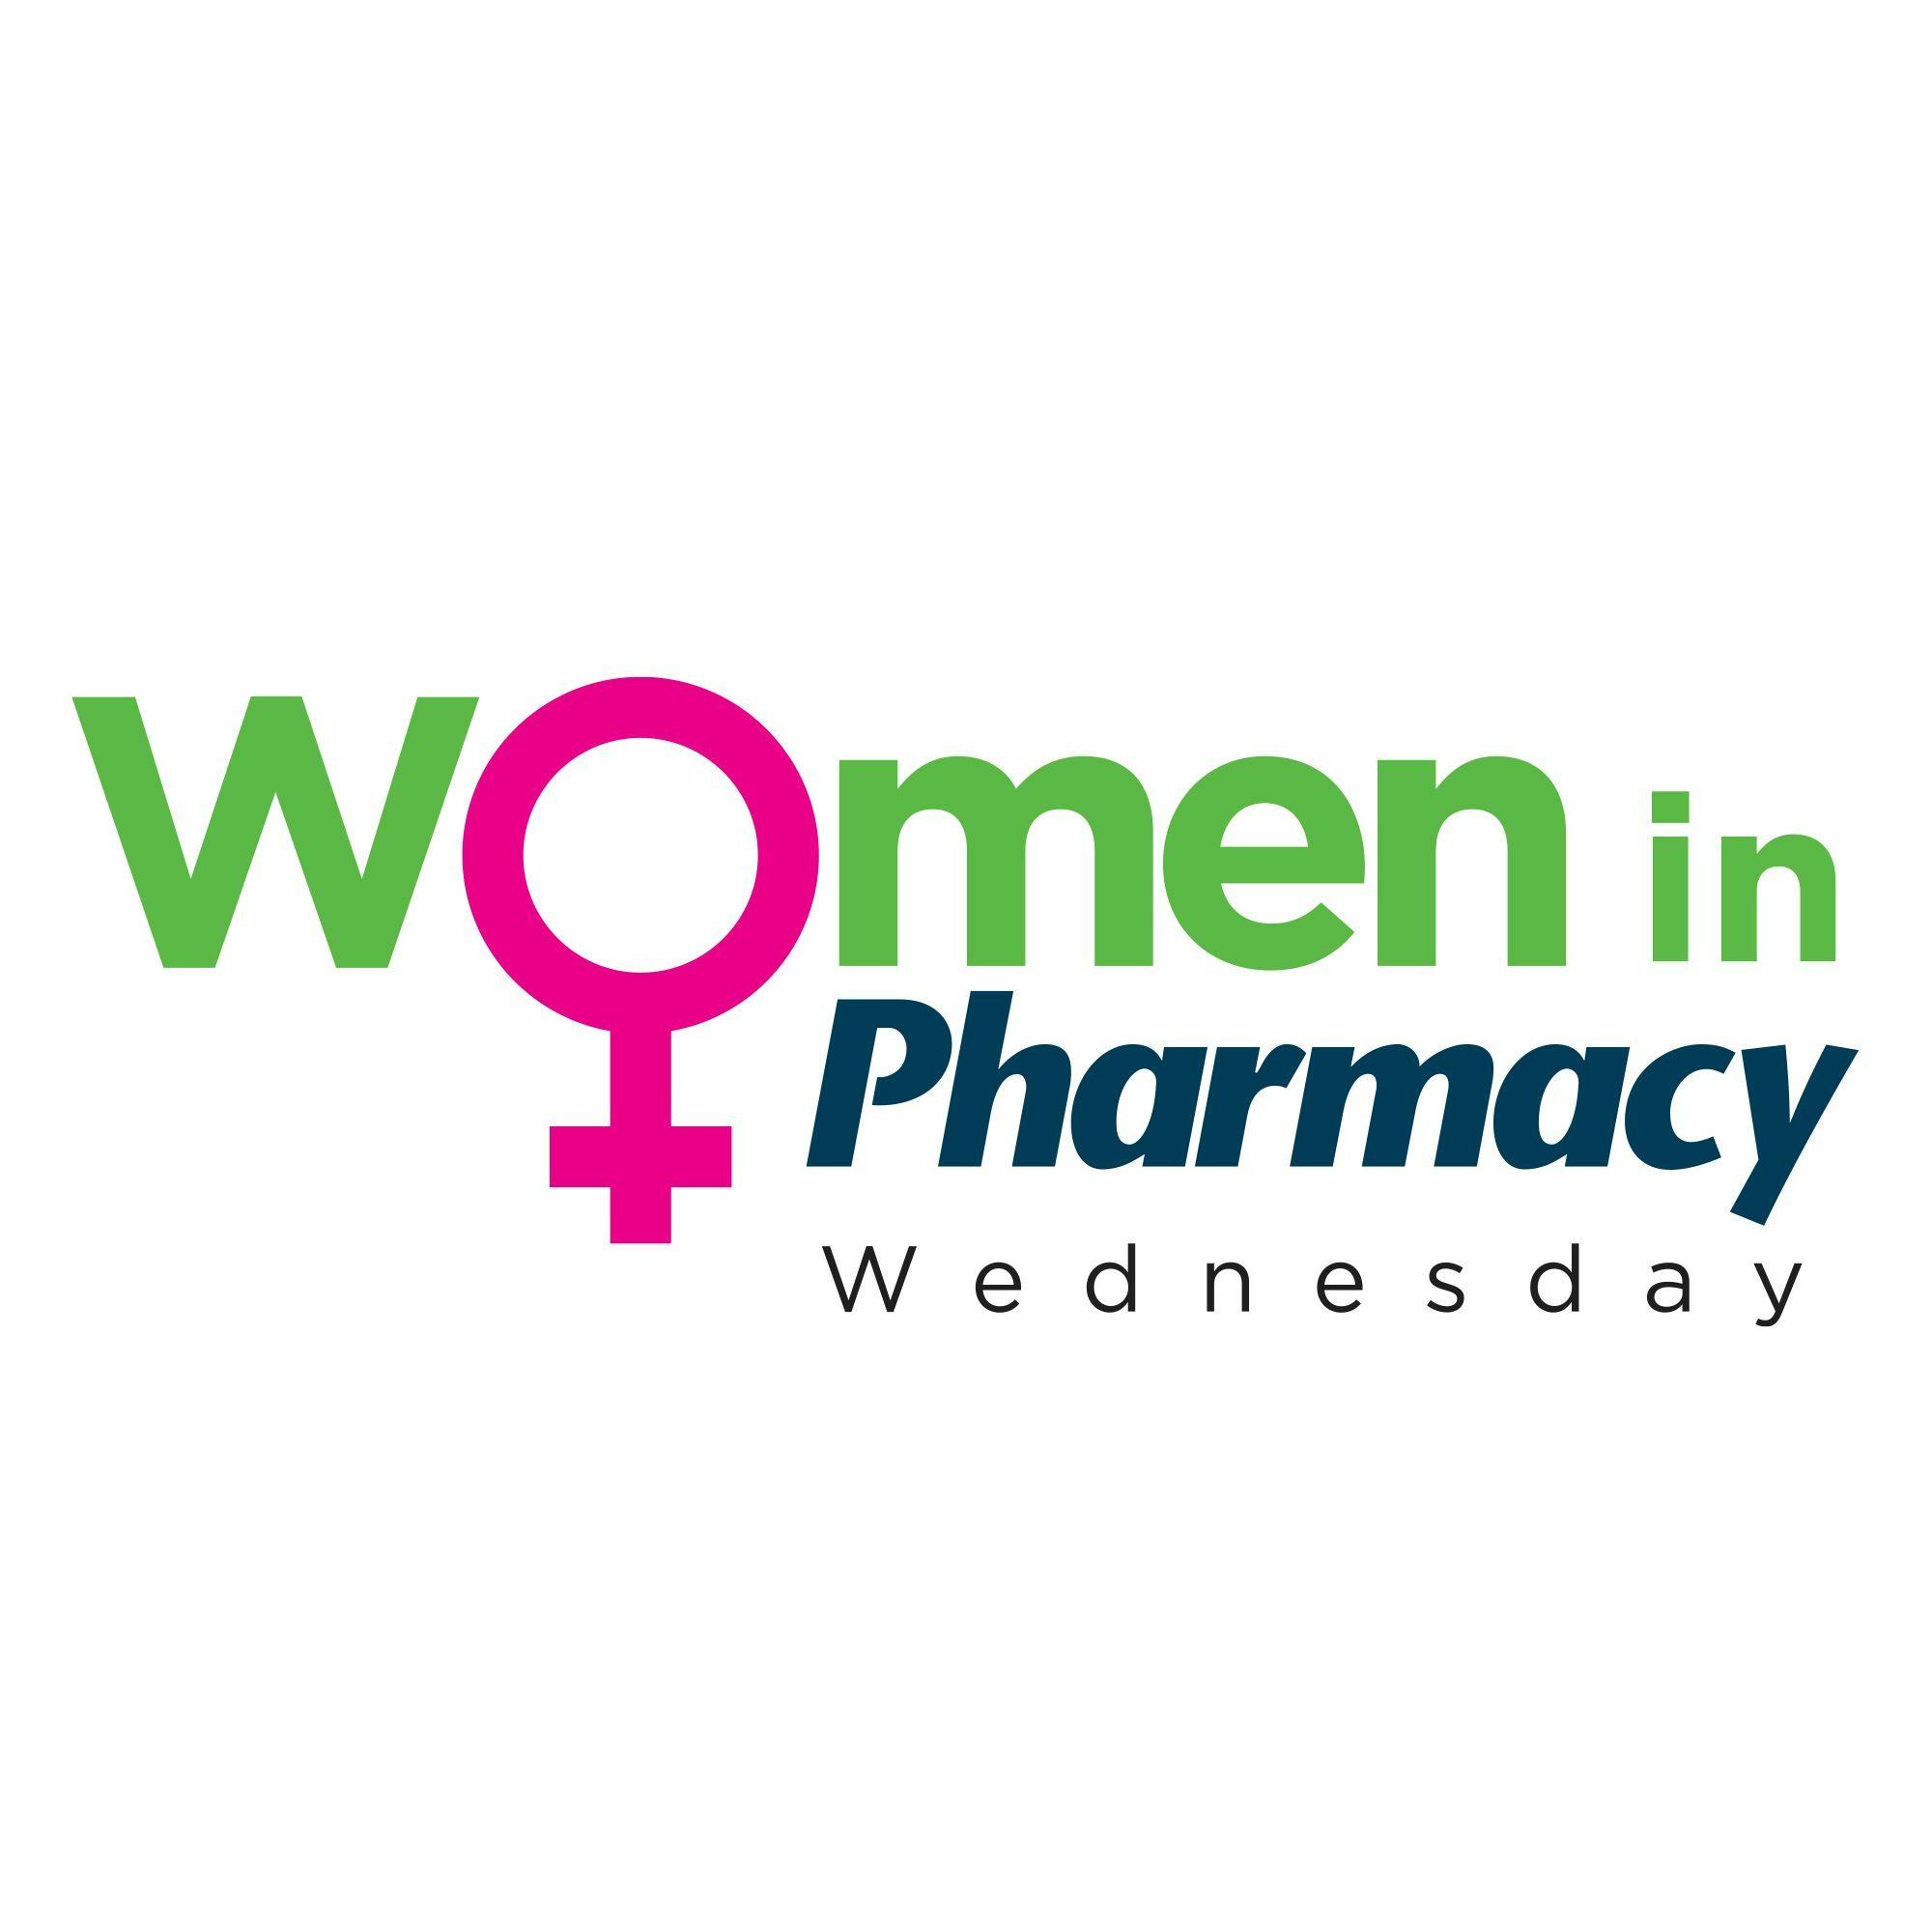 Pharmacy Focus Podcast: Women in Pharmacy Wednesday- Episode 5